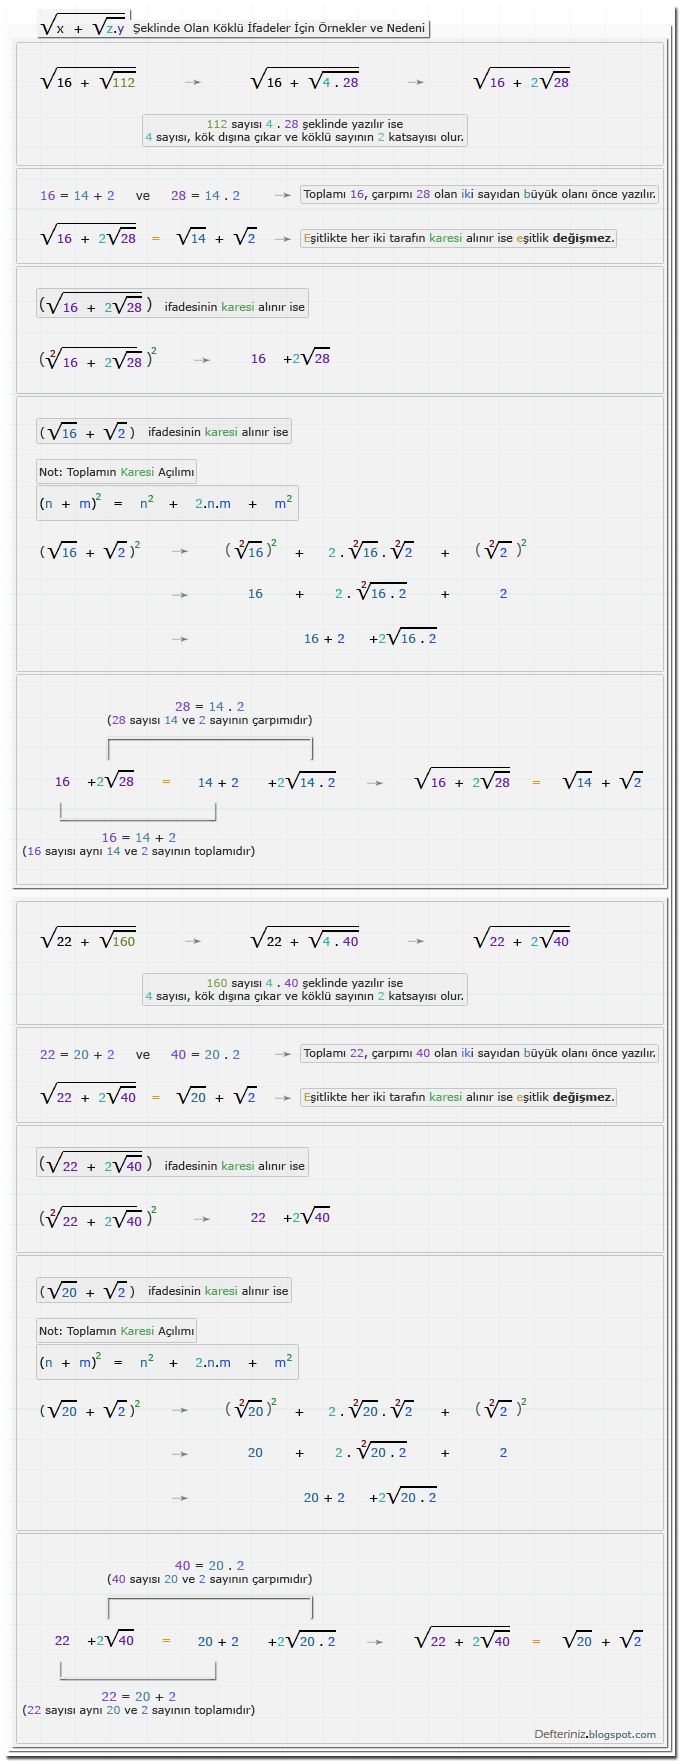 Örnek-34 » √(x + √z.y) şeklinde olan köklü ifadeler ve nedeni ile (√a + √b) şeklinde olan ifadelerin karesi için örnekler.